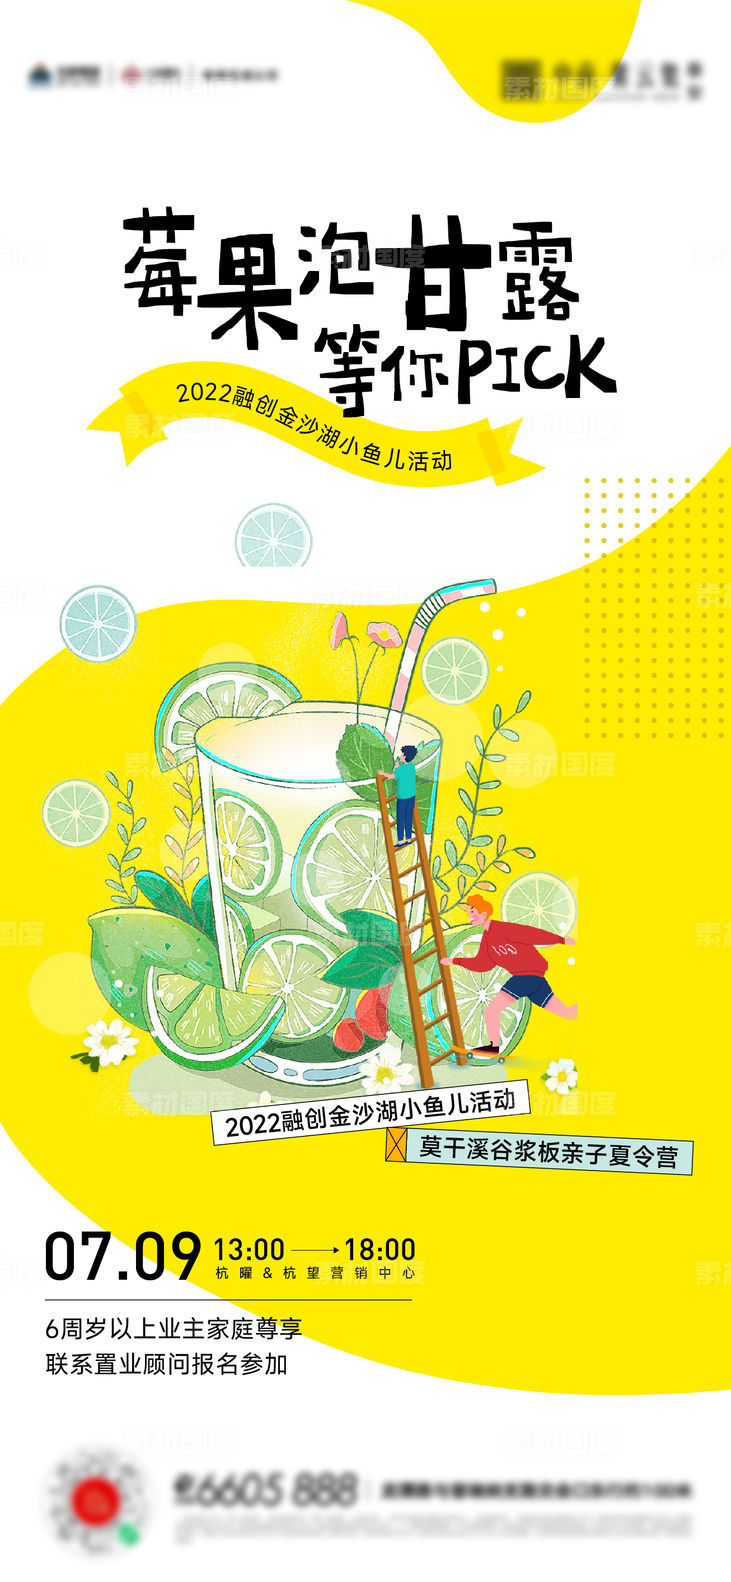 夏天饮料奶茶diy暖场活动海报